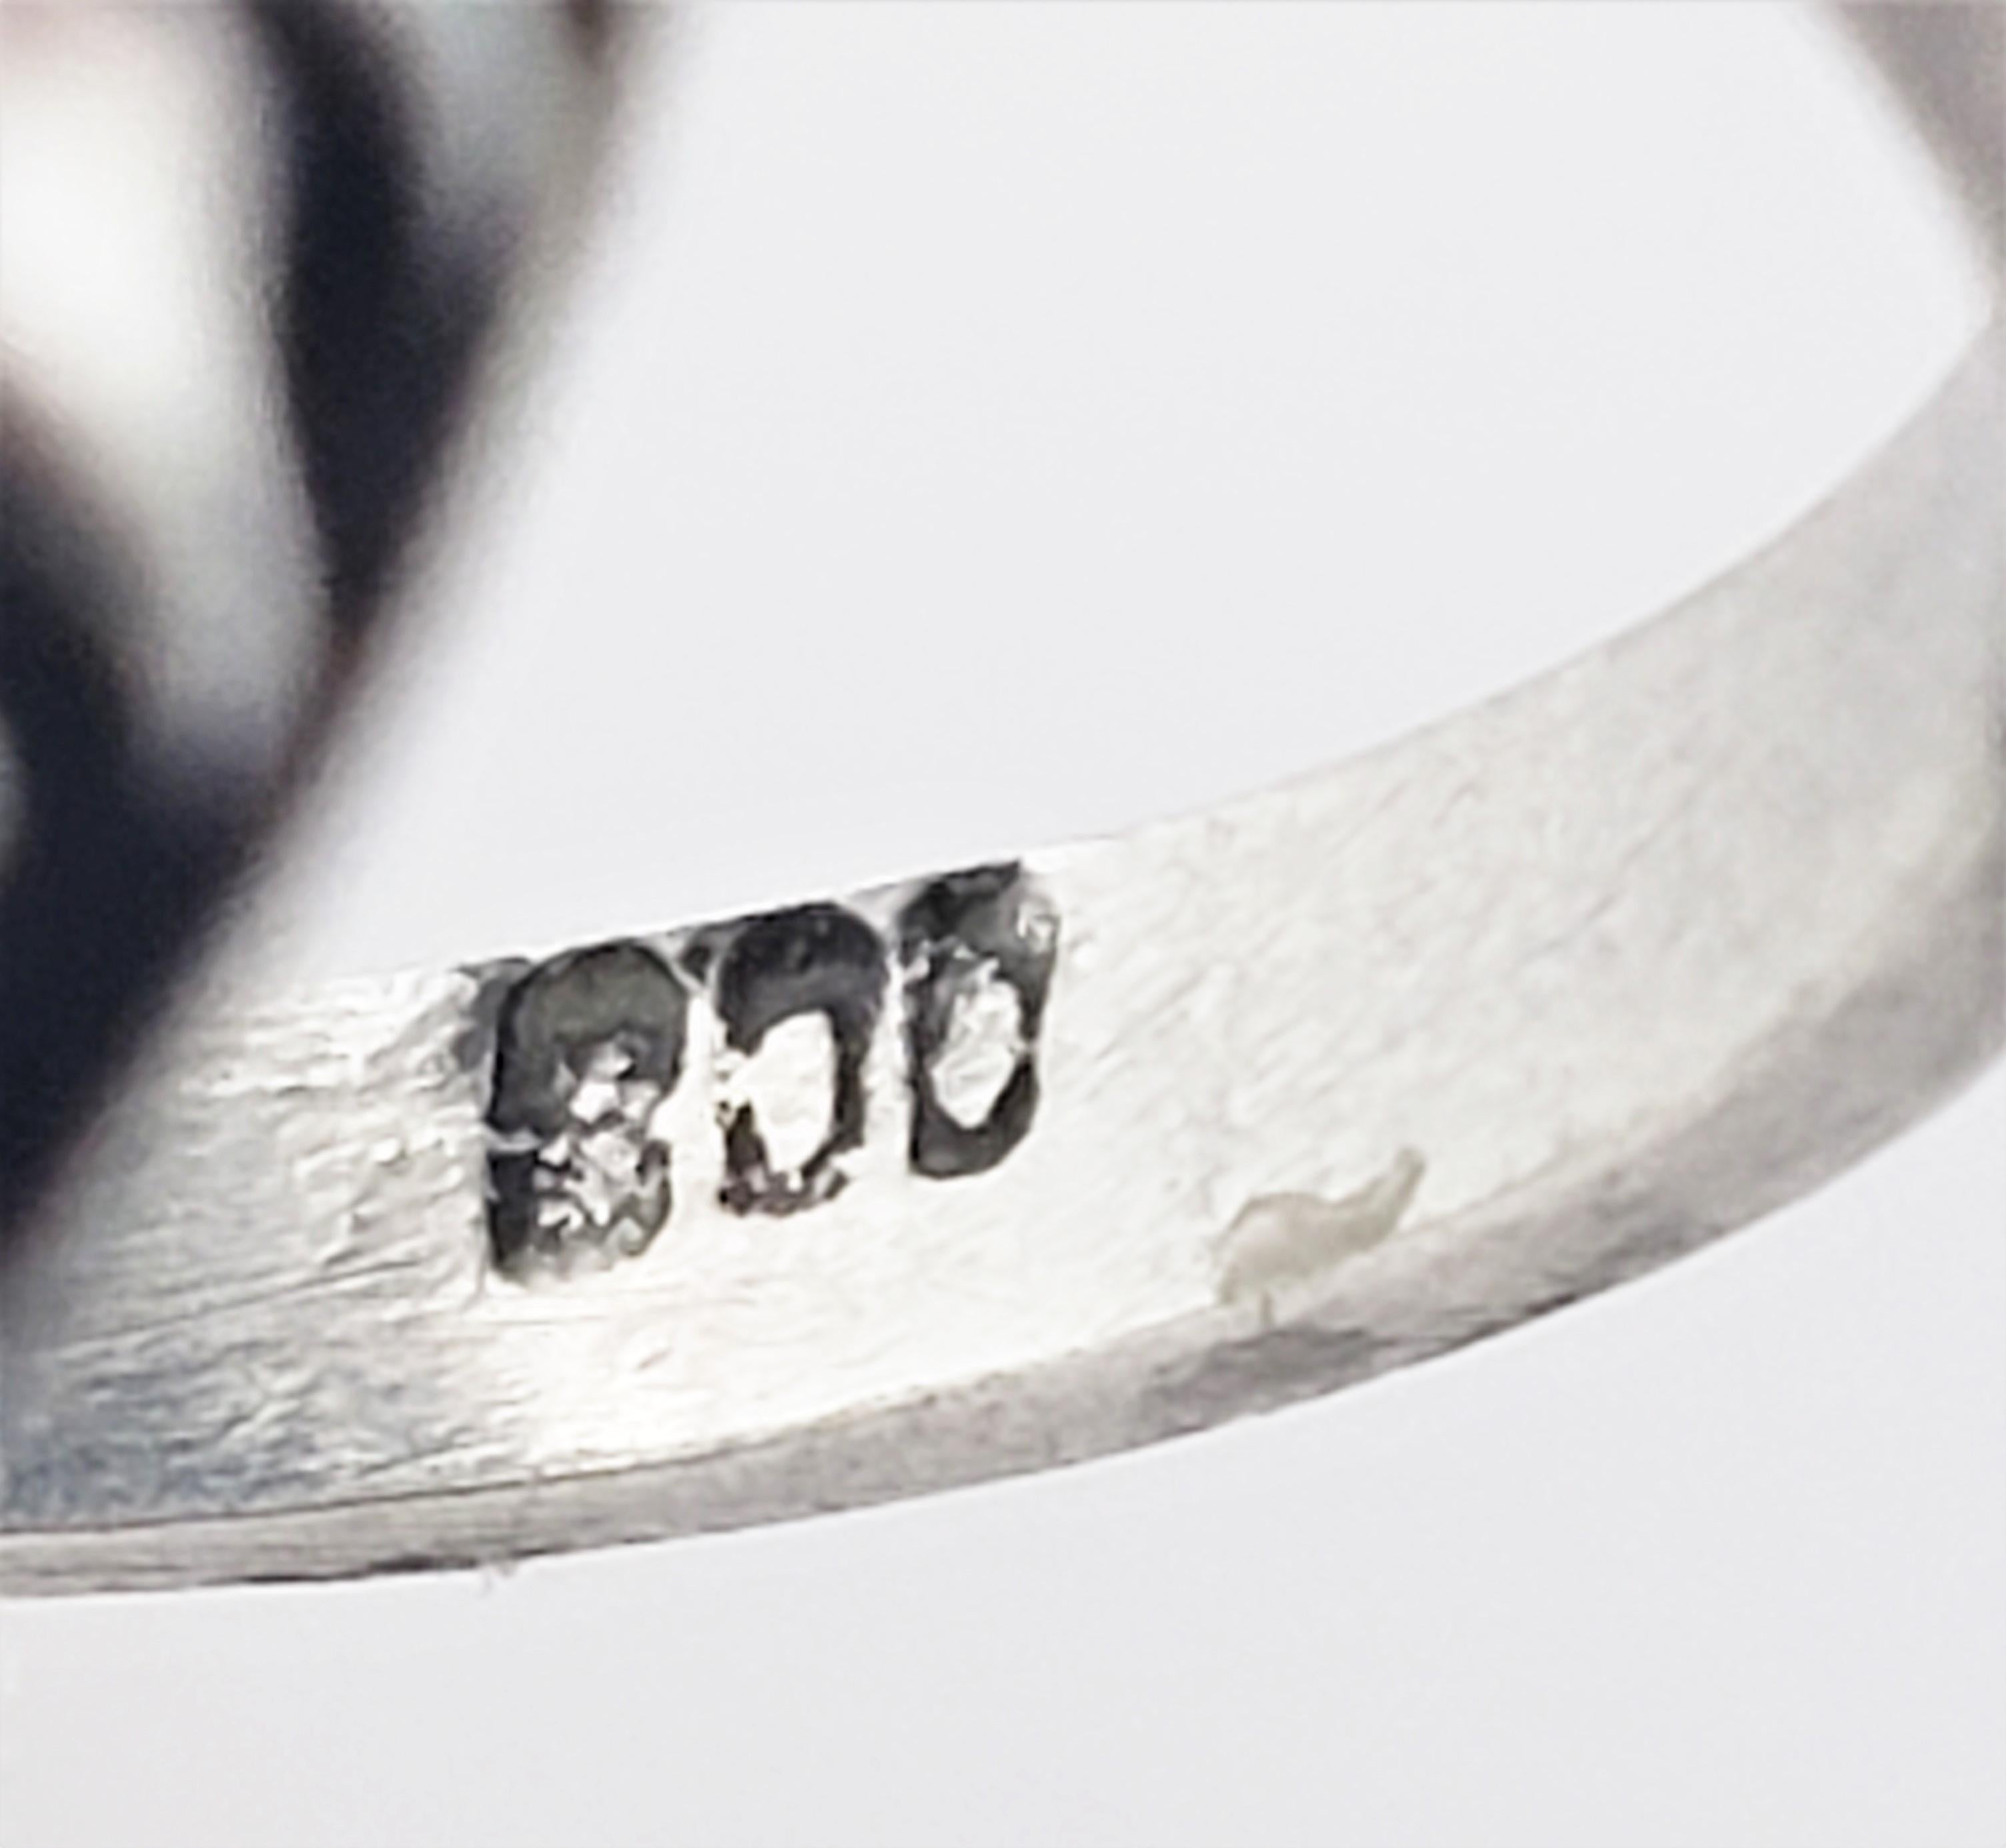 800 Silber blau marmoriert Cabochon Stein Ring Größe 6.25-

Dieser schöne Ring besteht aus einem ovalen blau marmorierten Cabochon (16 mm x 12 mm x 11 mm), der in wunderschönes Silber gefasst ist. Die Oberseite des Rings misst 23 mm x 18 mm. Schaft: